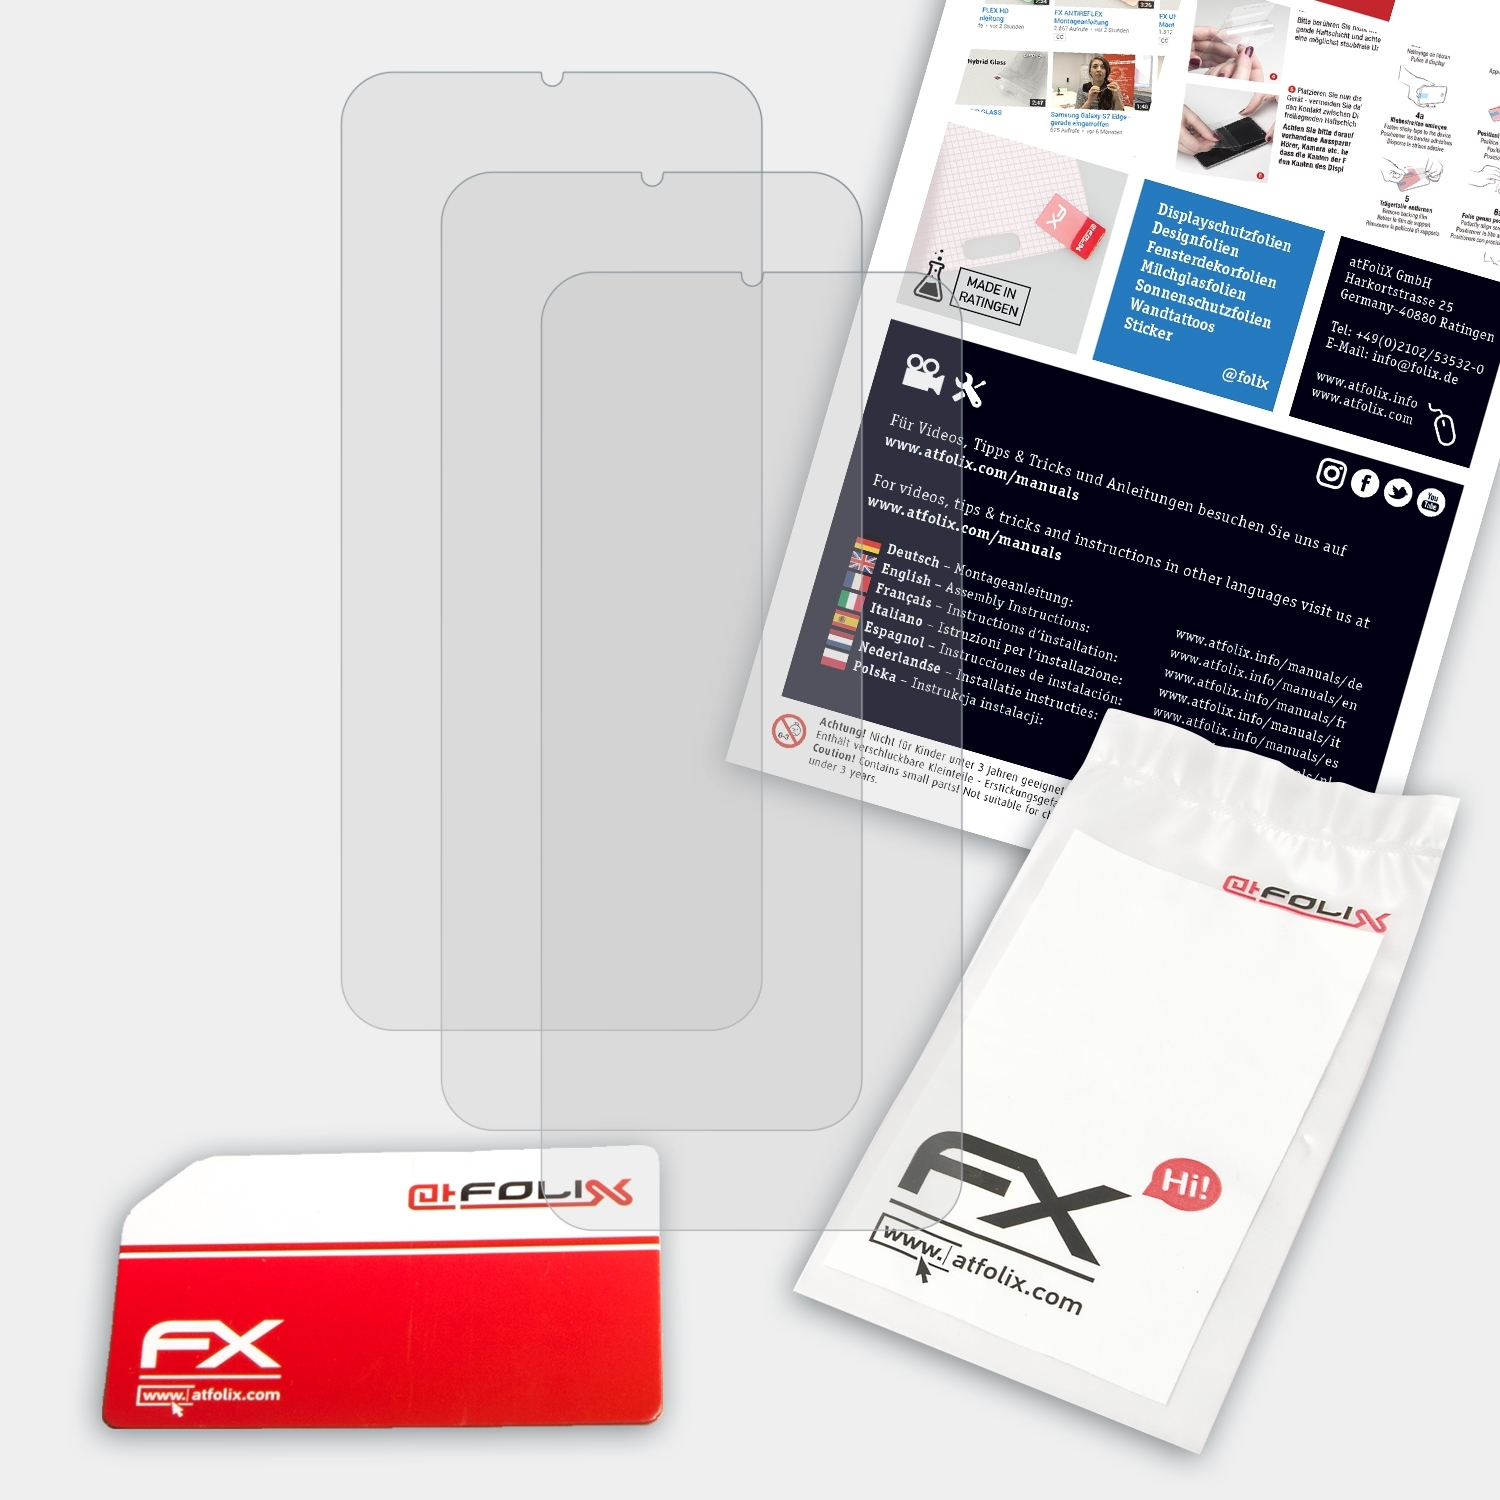 ATFOLIX 3x FX-Antireflex Displayschutz(für Realme Oppo C3)